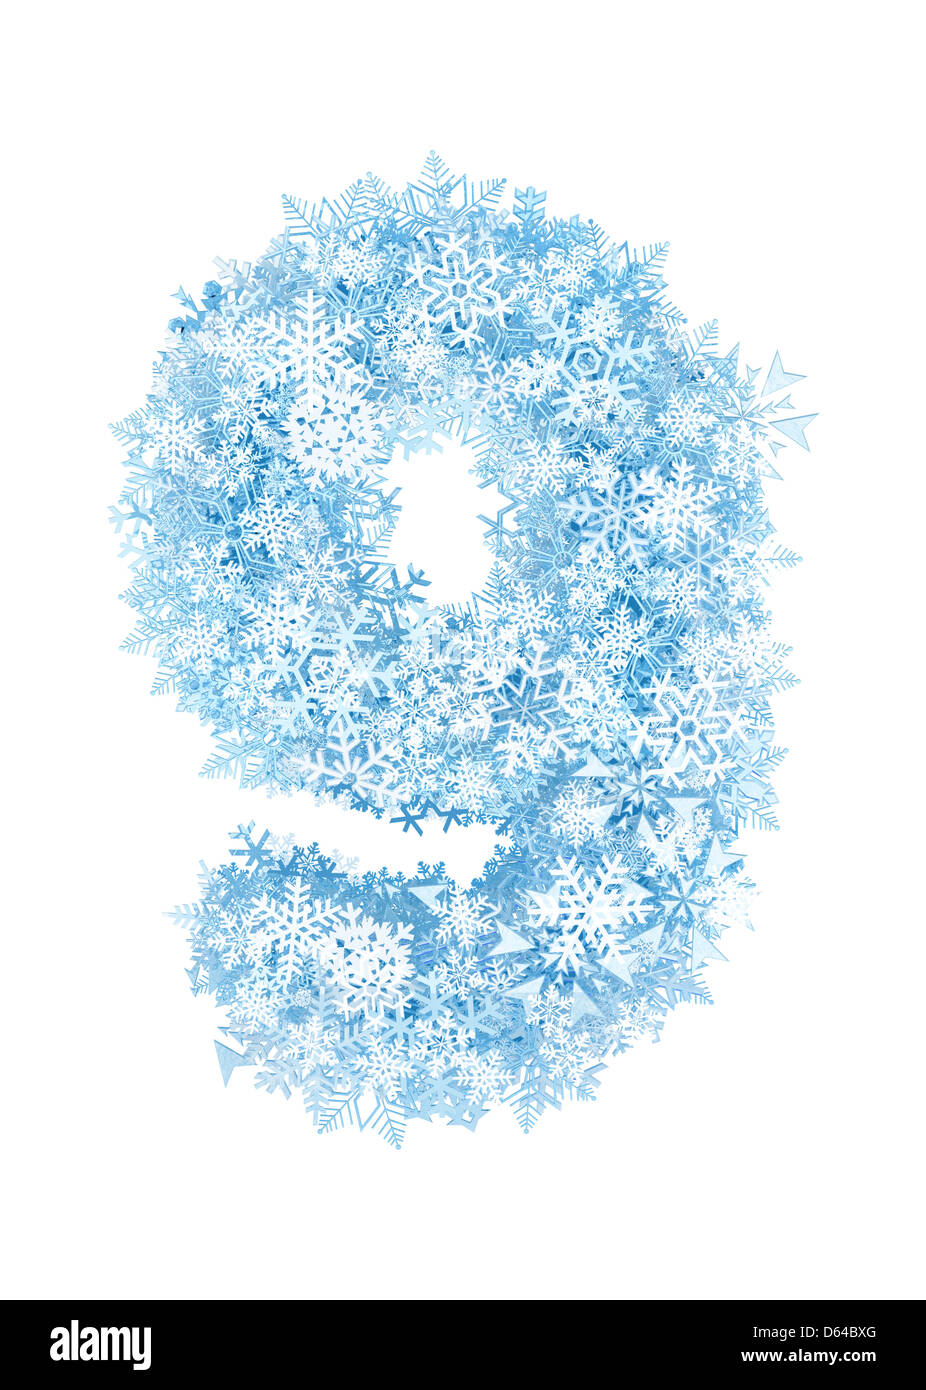 Снежки цифра 1. Цифры из снежинок. Снежинки с цифрами. Цифра 5 в зимнем стиле. Цифры в зимнем стиле.